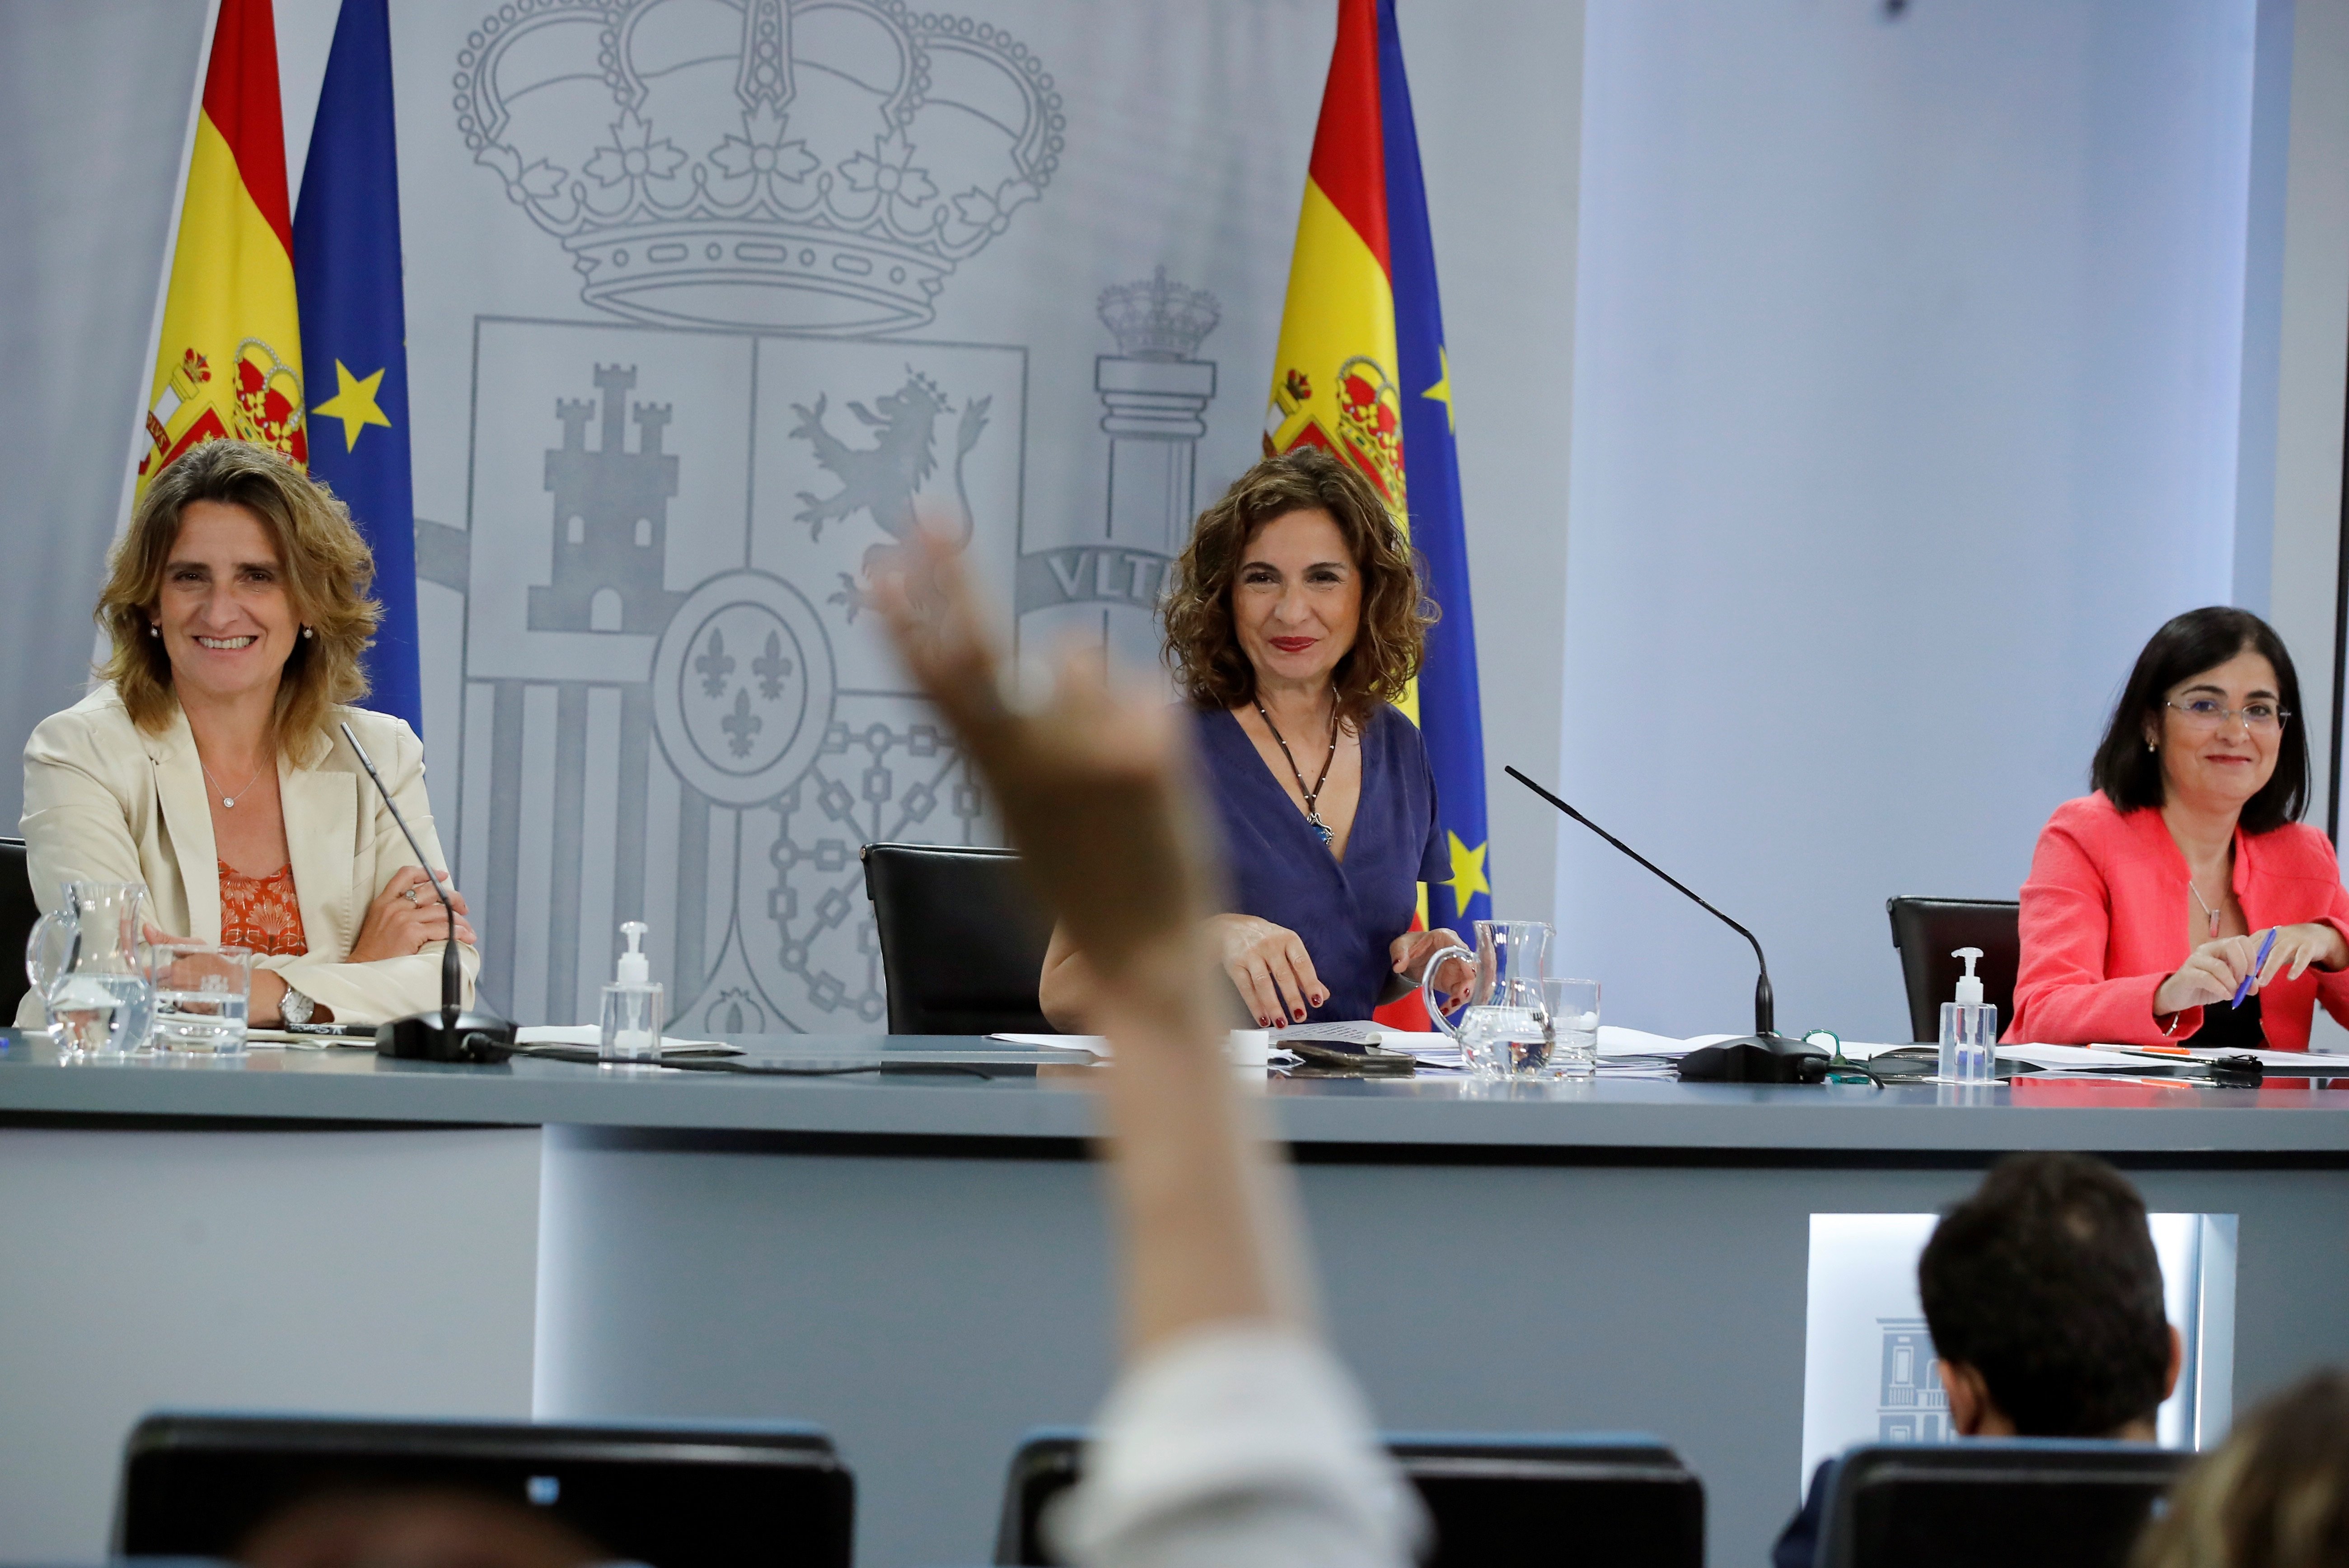 La Moncloa insta l'independentisme a aparcar les "posicions extremes"